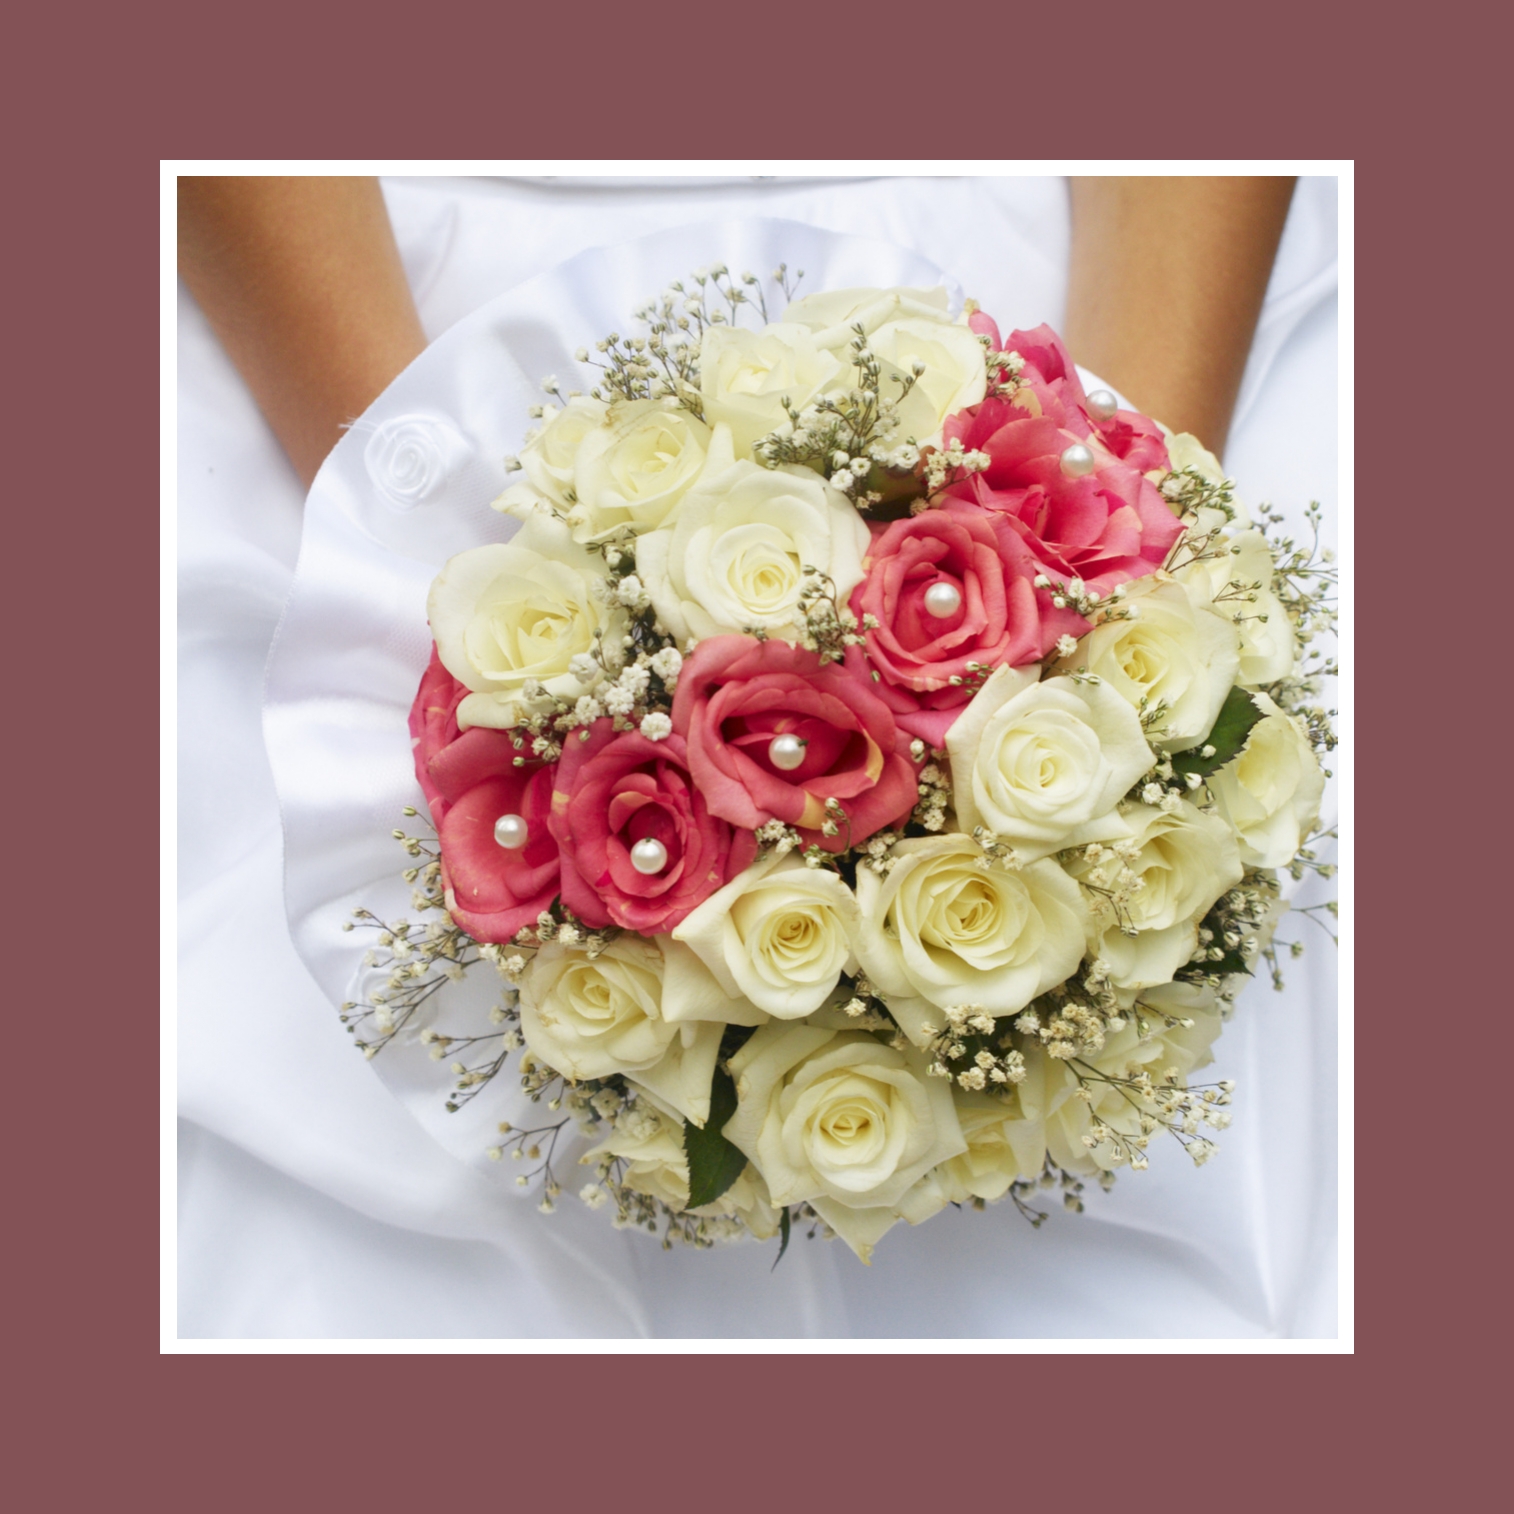 Prächtiger Brautstrauß in Rosa und Elfenbeinweiß